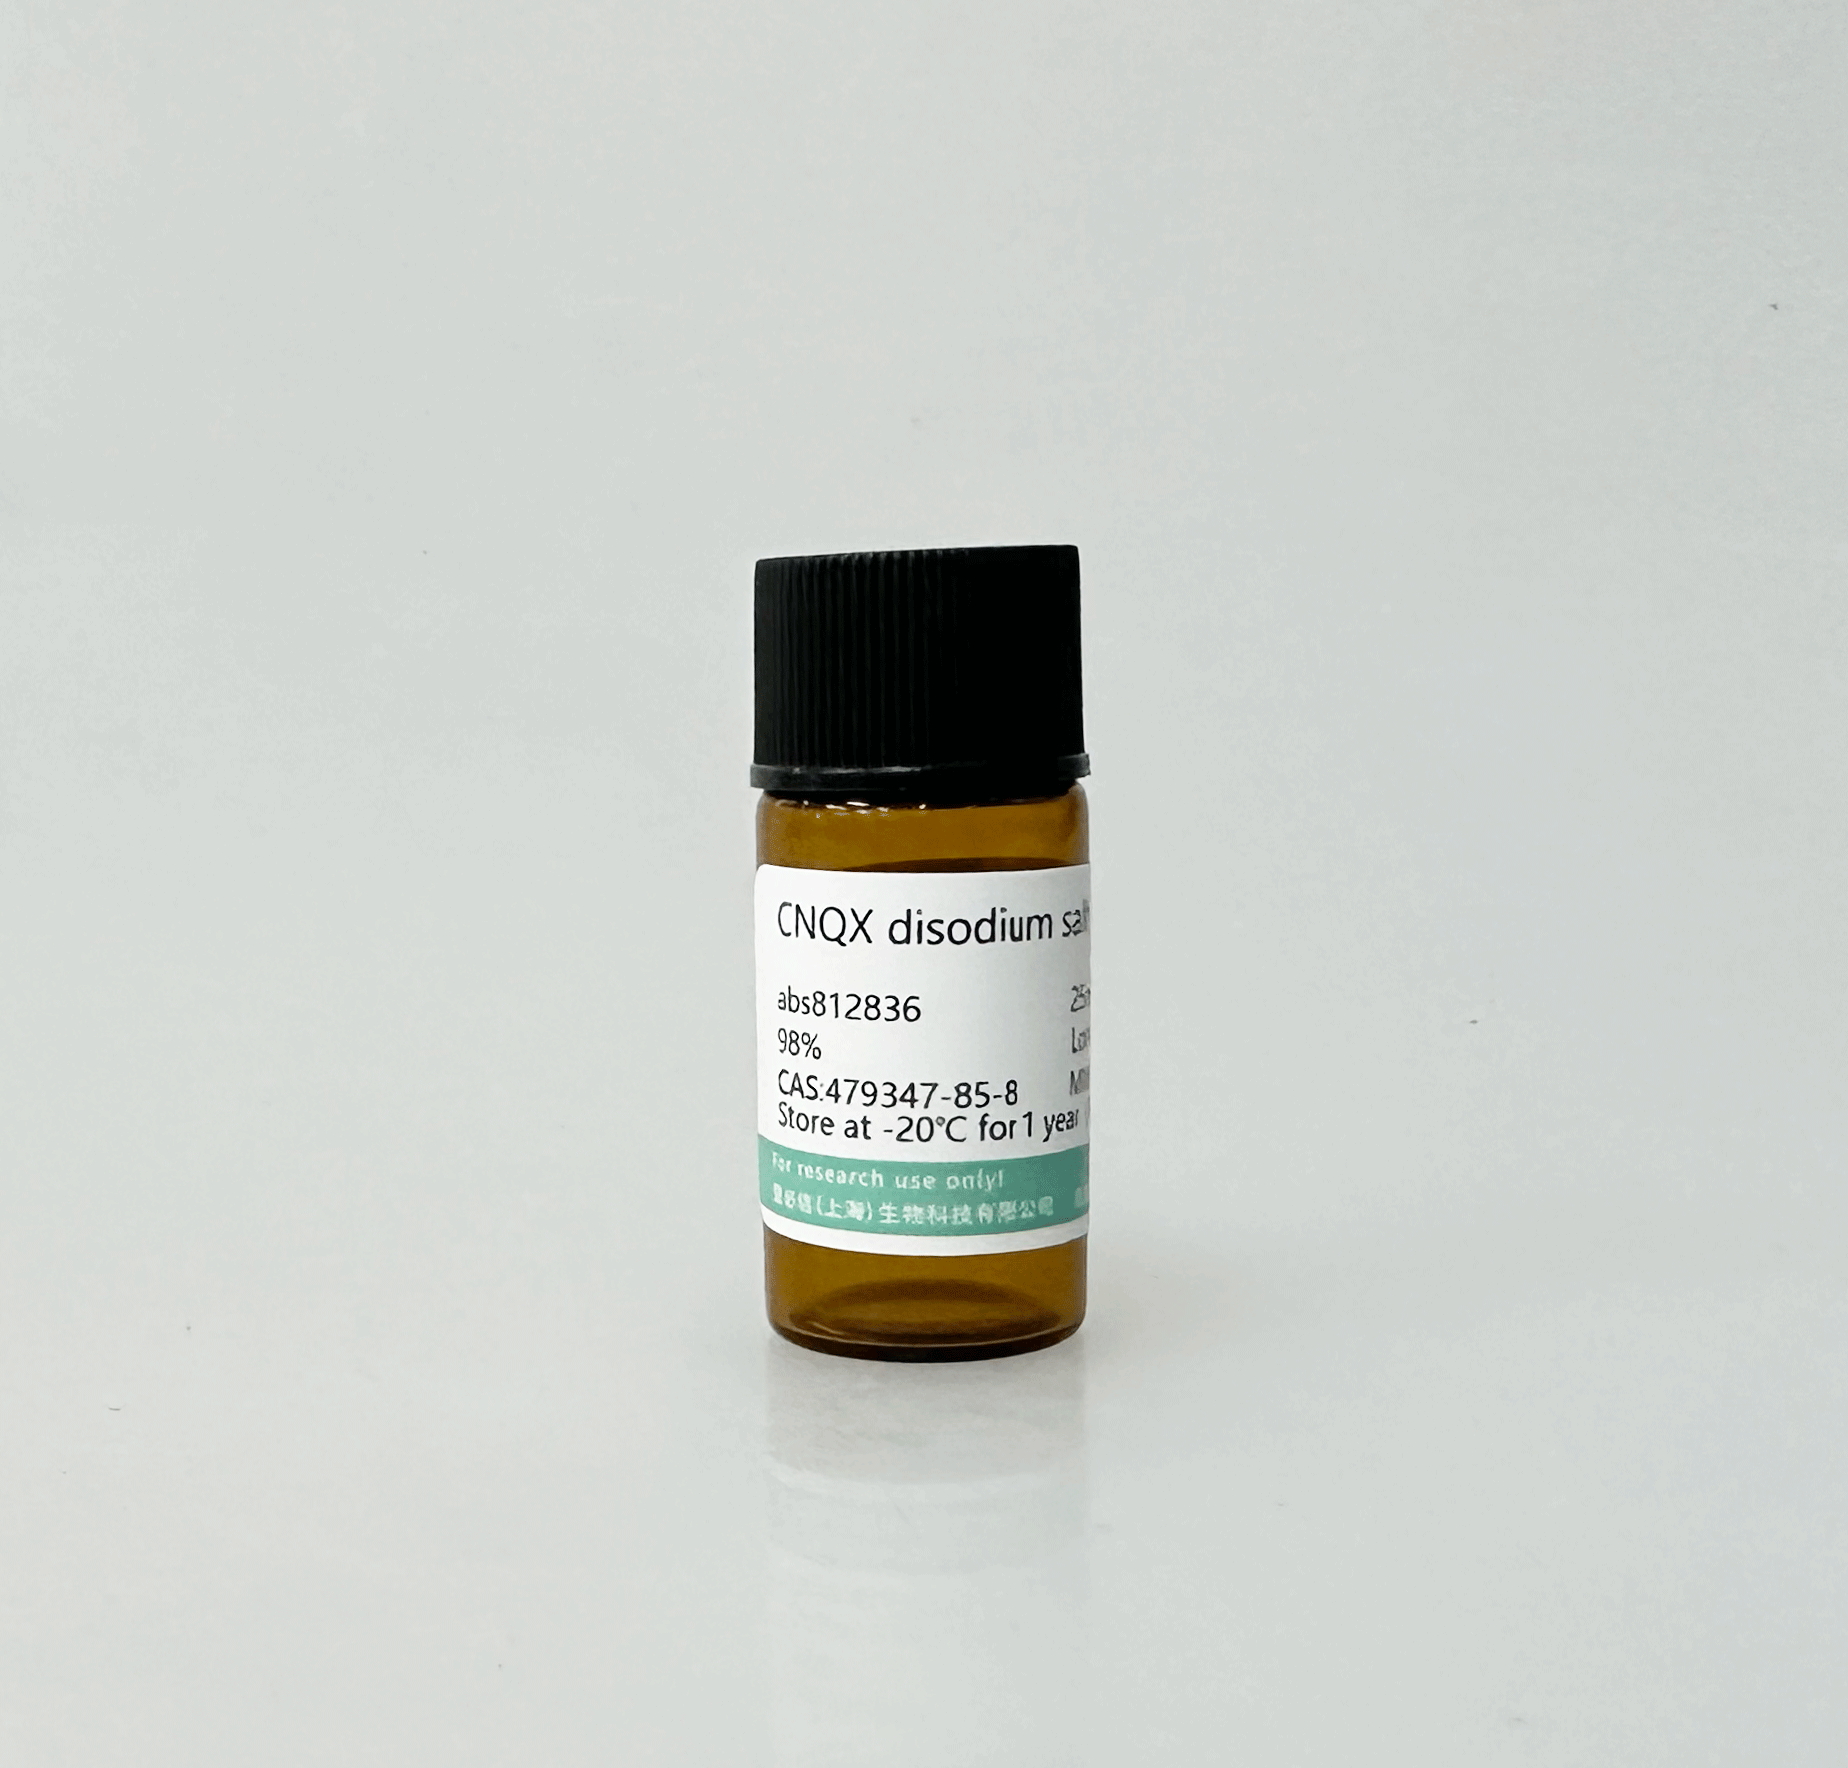 CNQX disodium salt